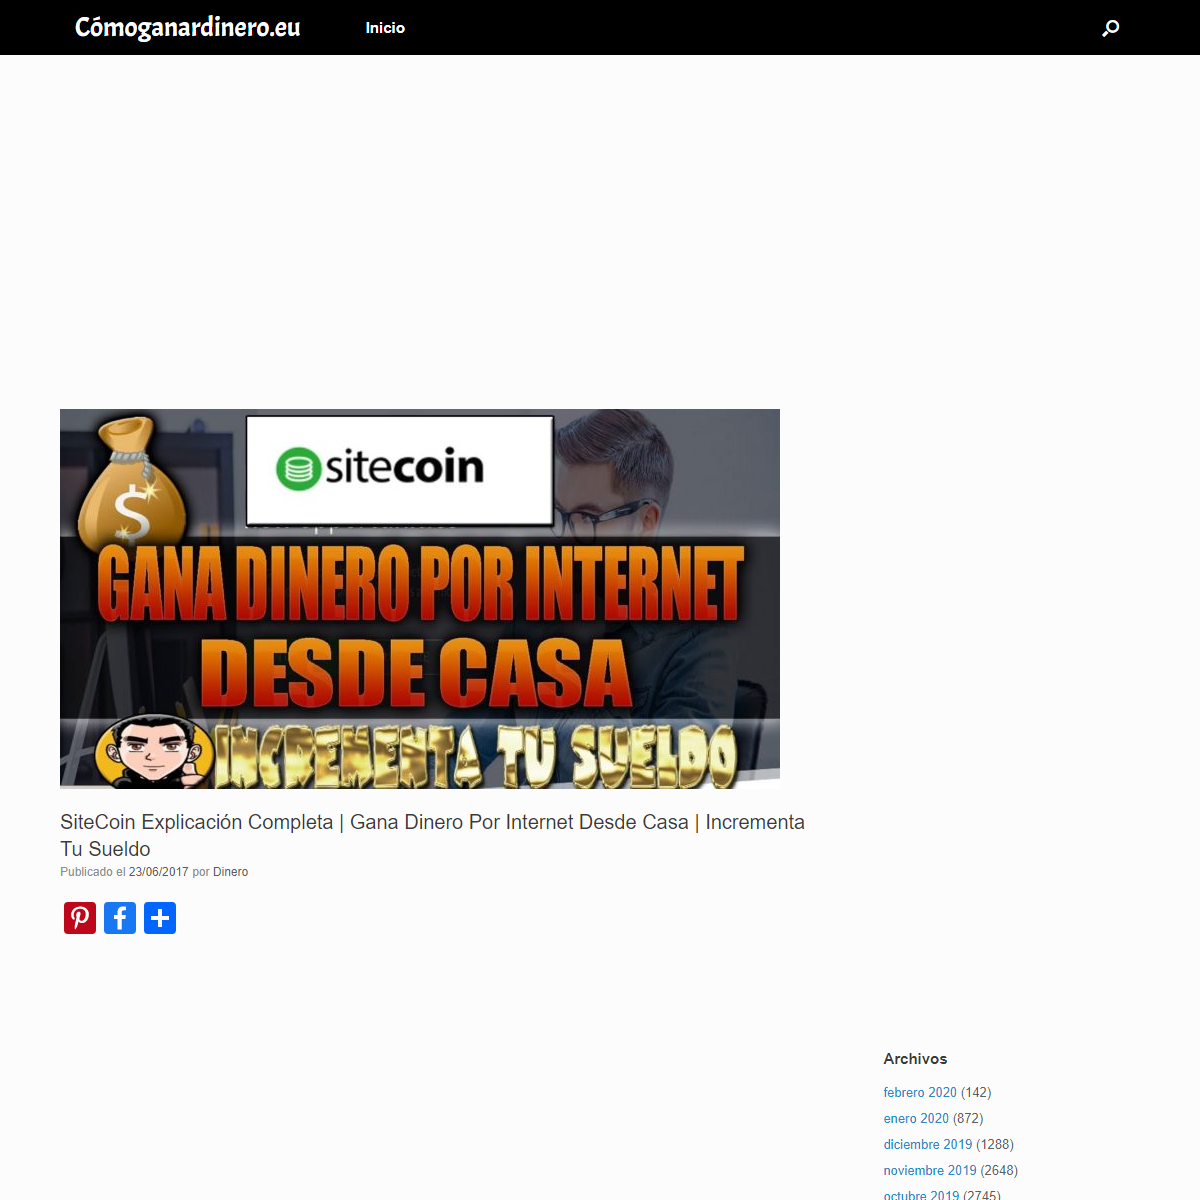 A complete backup of https://www.comoganardinero.eu/sitecoin-explicacion-completa-gana-dinero-por-internet-desde-casa-incrementa